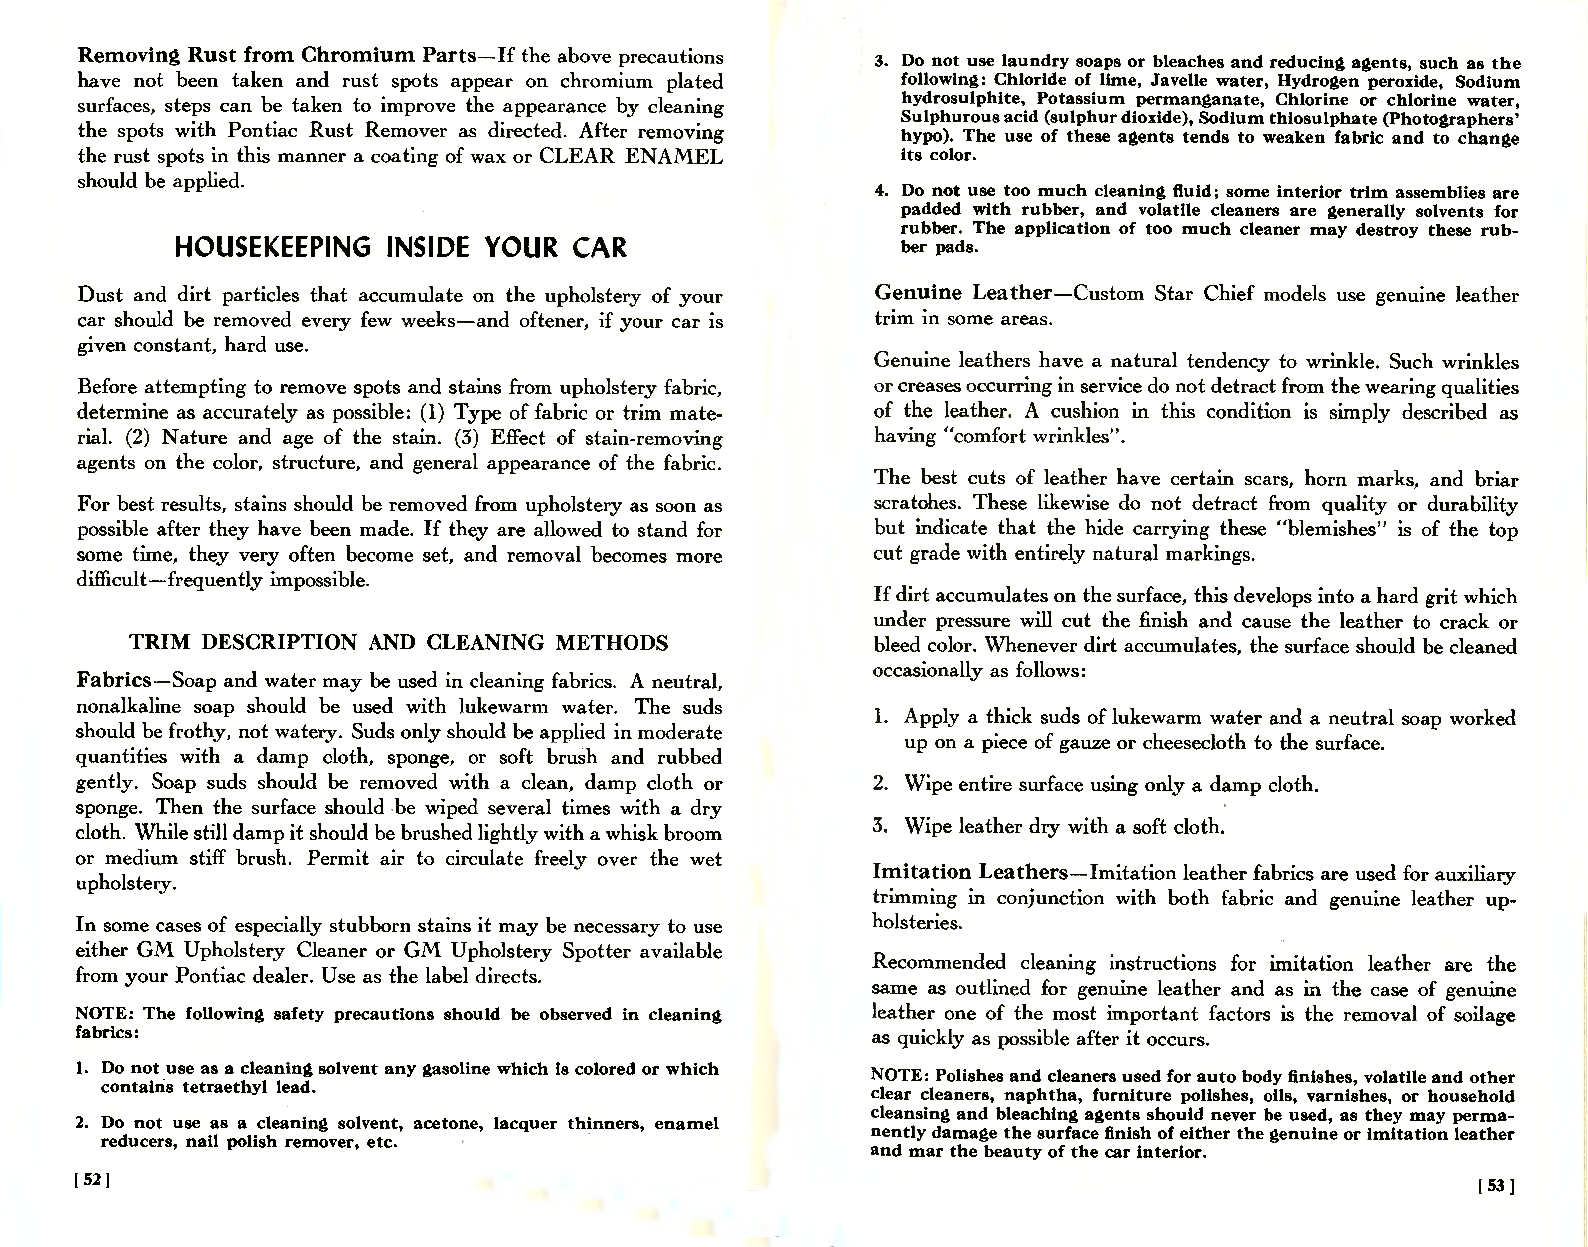 n_1957 Pontiac Owners Guide-52-53.jpg